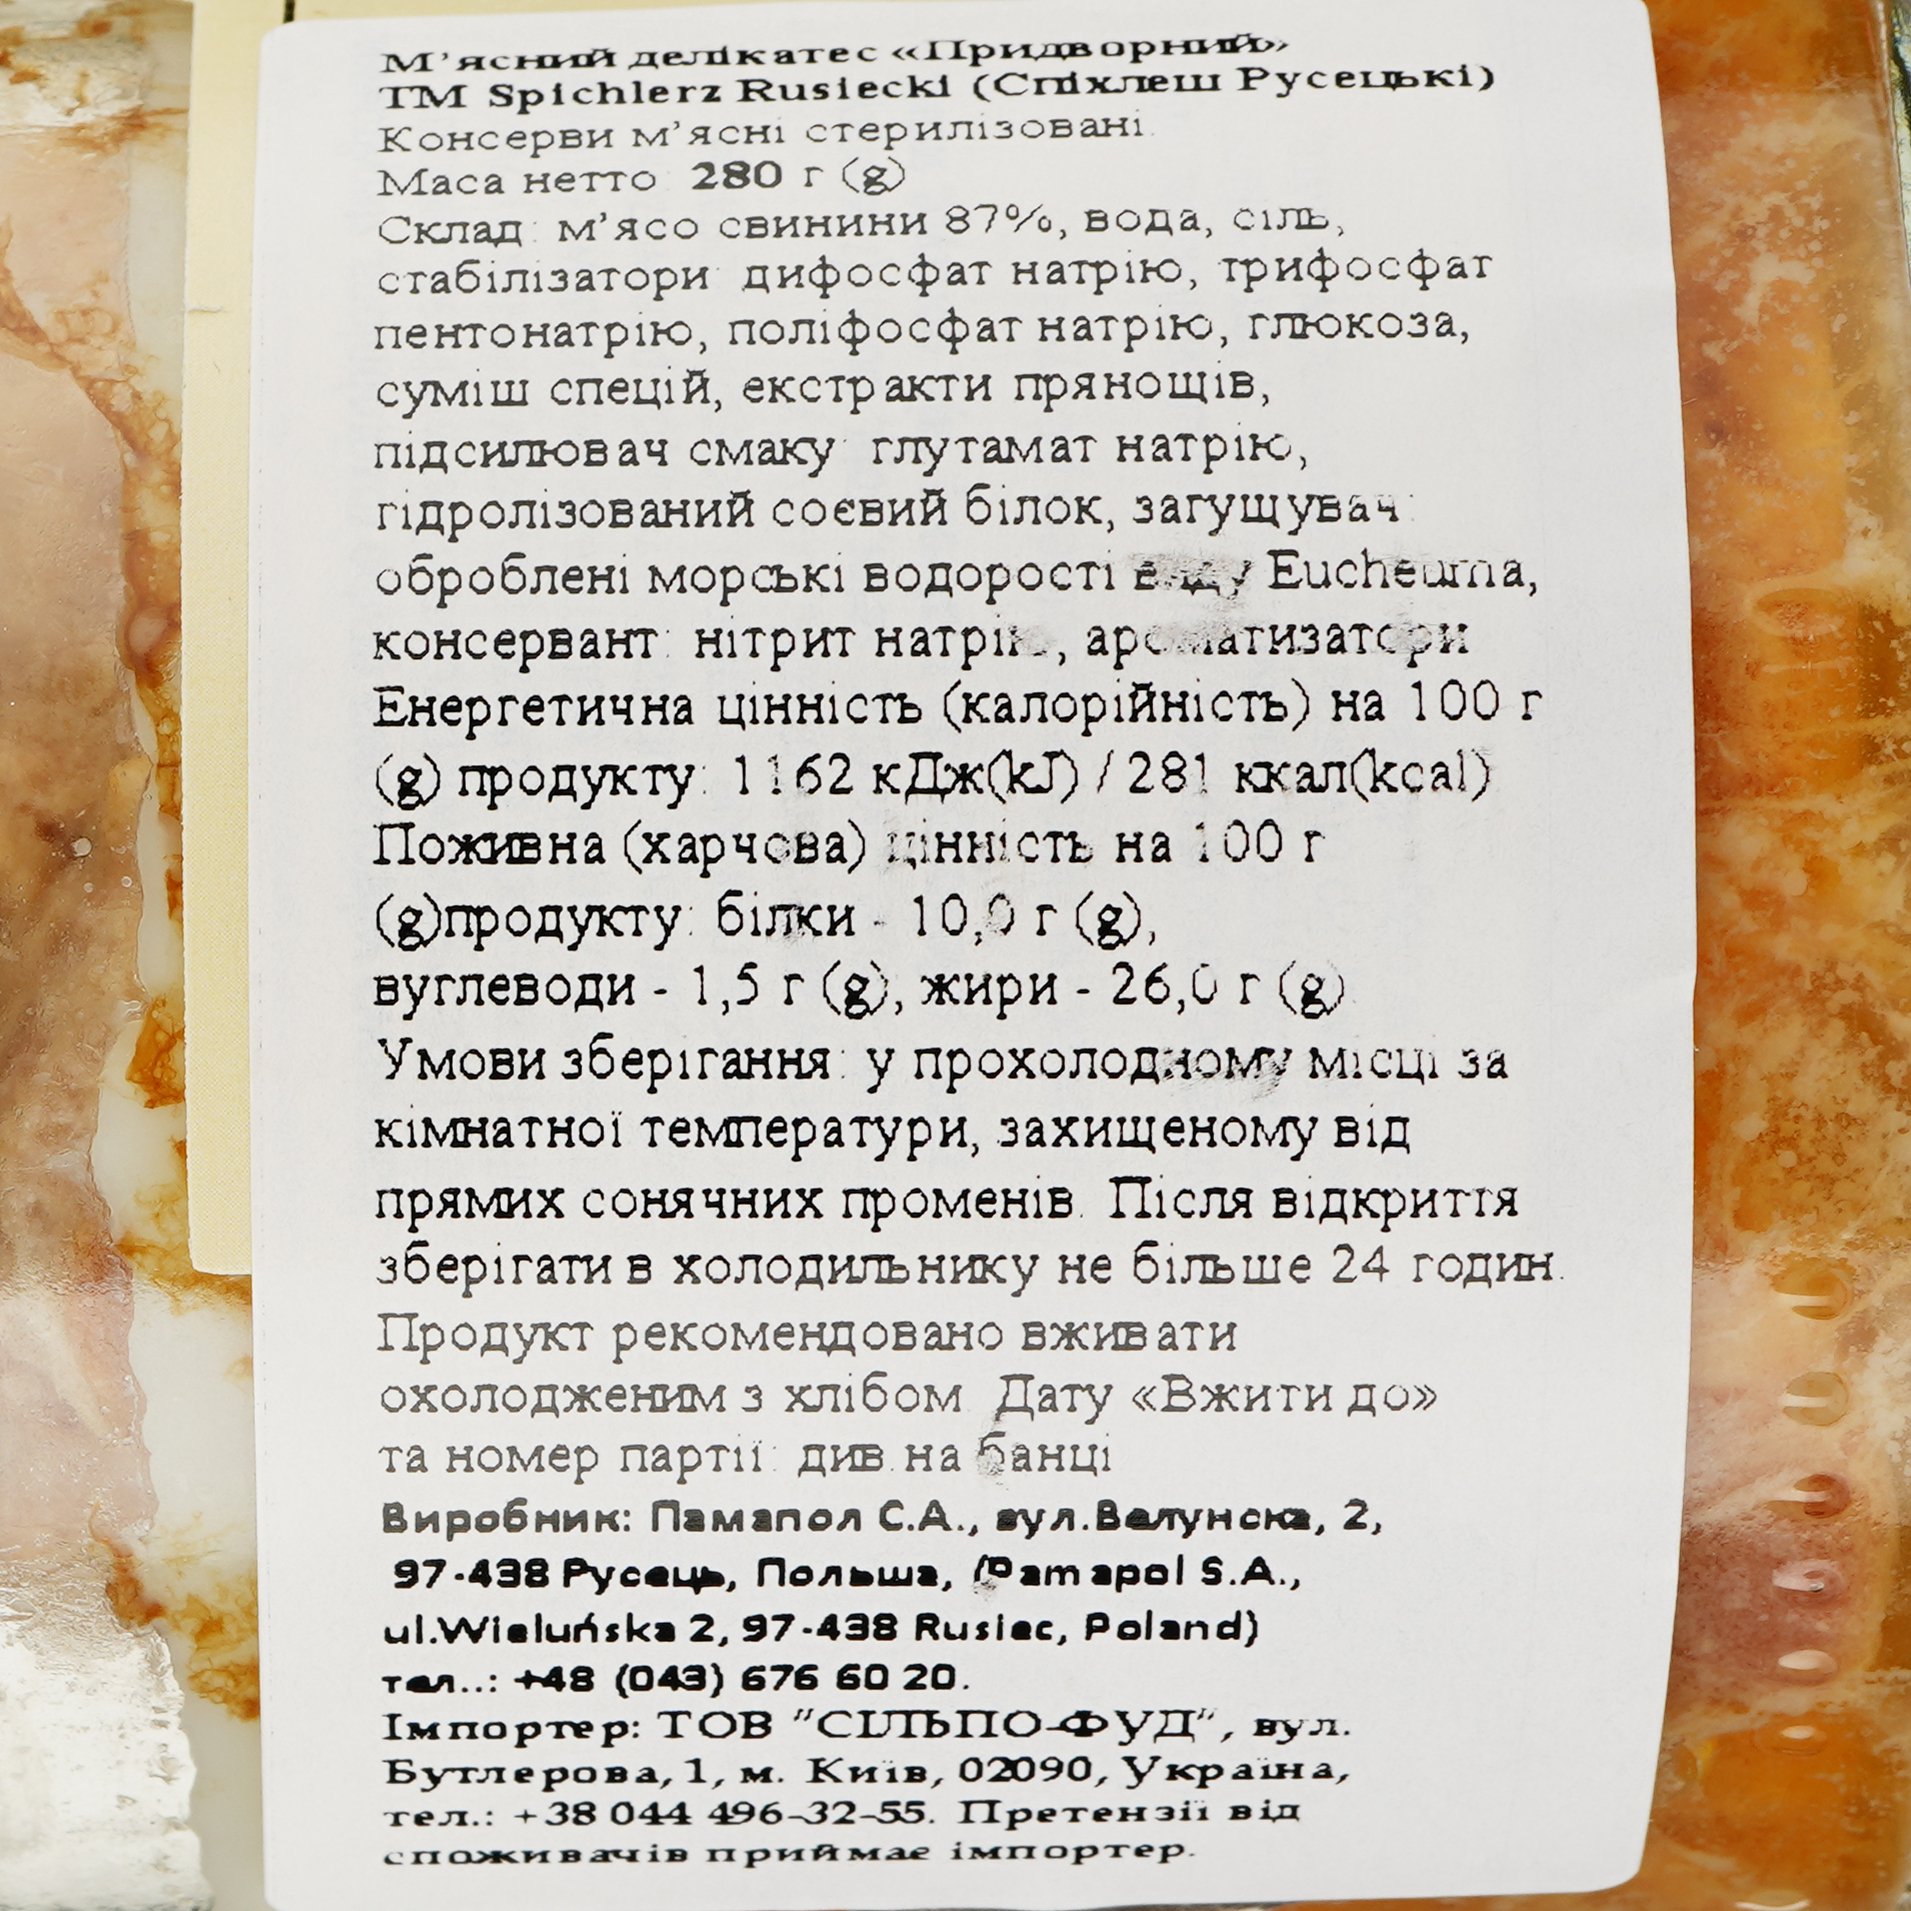 М'ясний делікатес Spichlerz Rusiecki Dworski 280 г (538091) - фото 3